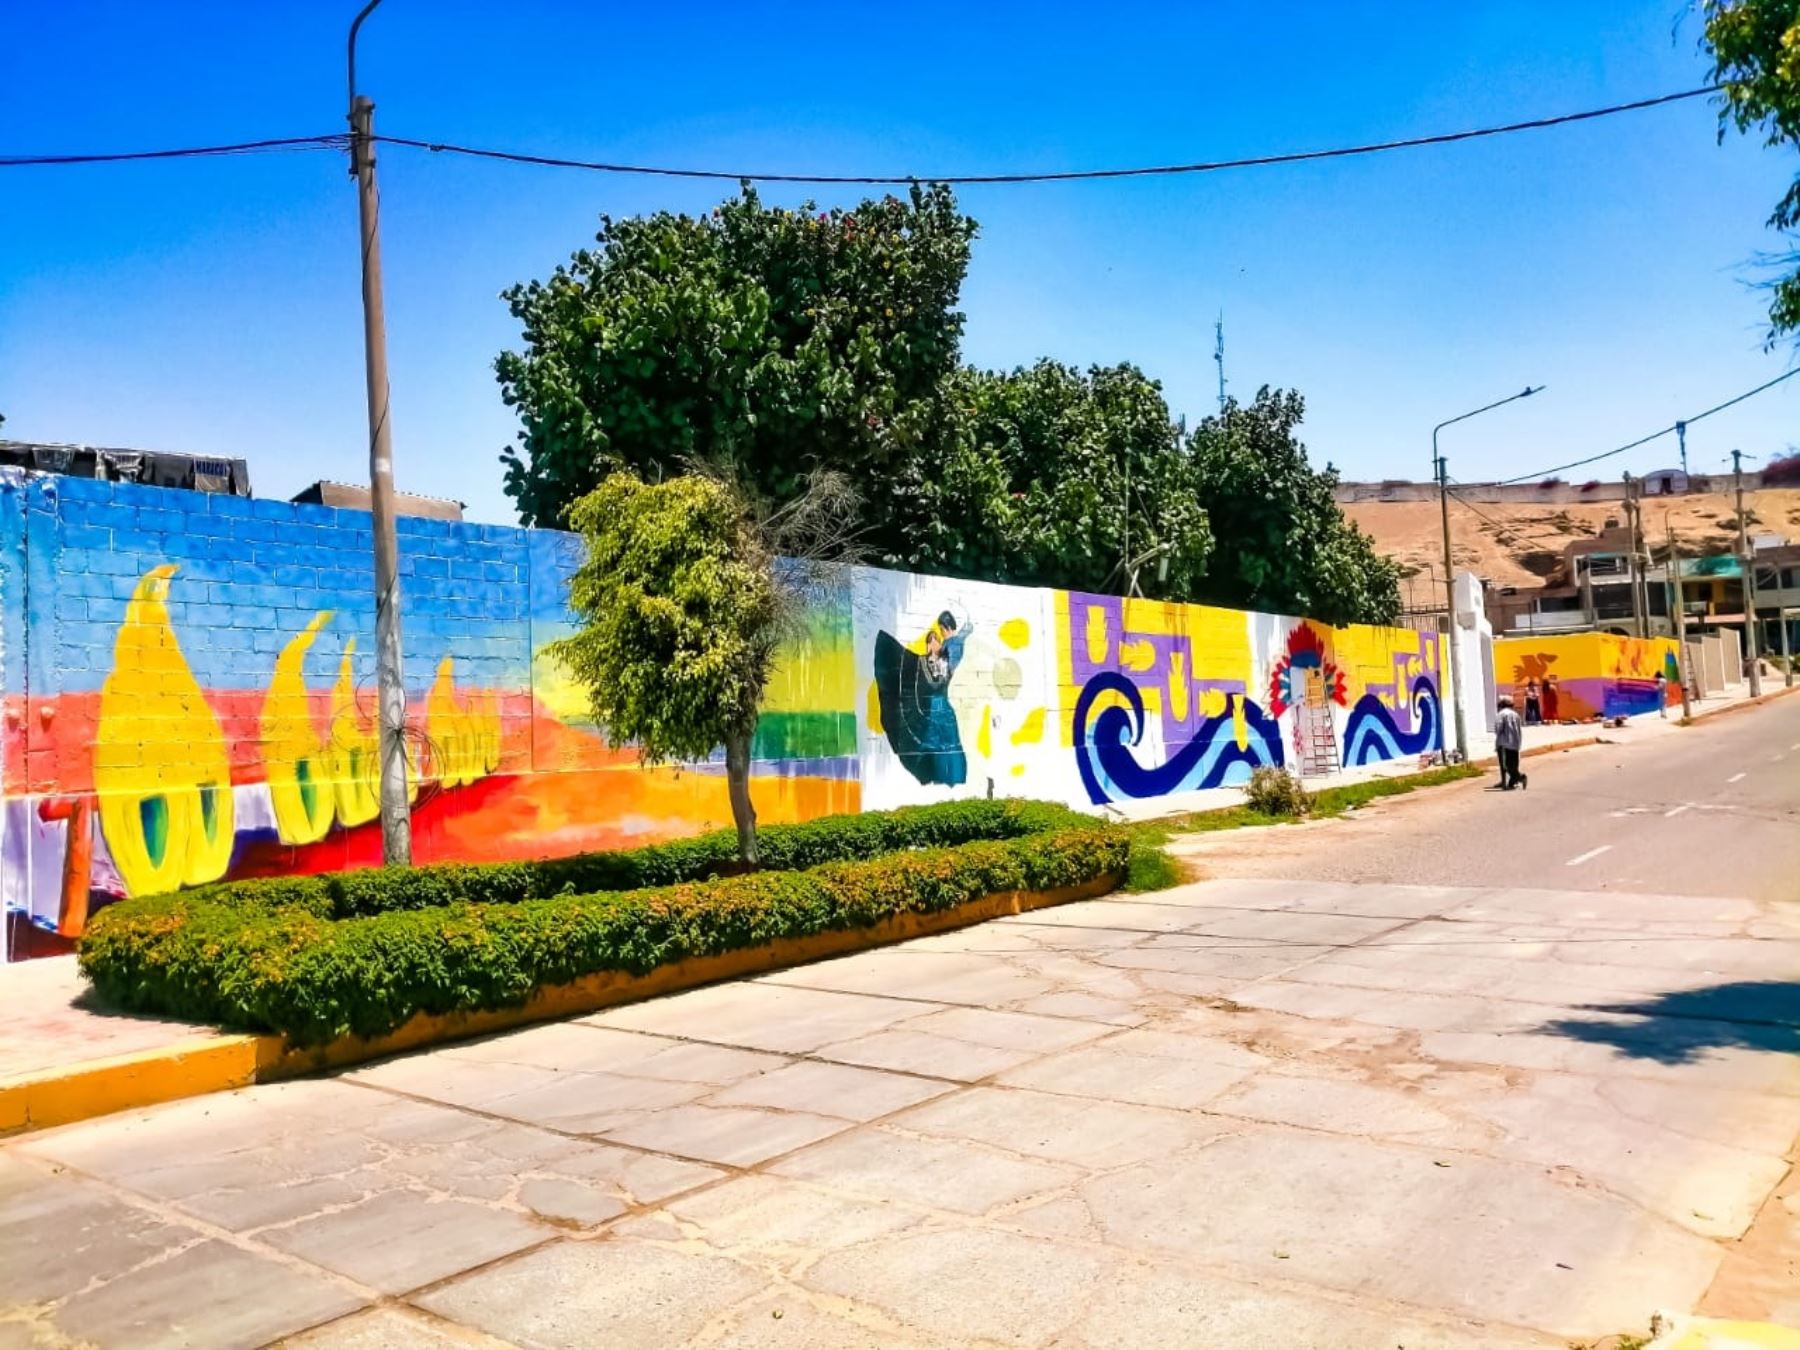 Artistas trujillanos promueven la cultura con pintura mural en el estadio de Huanchaco, provincia de Trujillo. Una actividad que forma parte del "Pacto por la Cultura al 2030" que impulsa el Ministerio de Cultura y la Unesco. ANDINA/Difusión